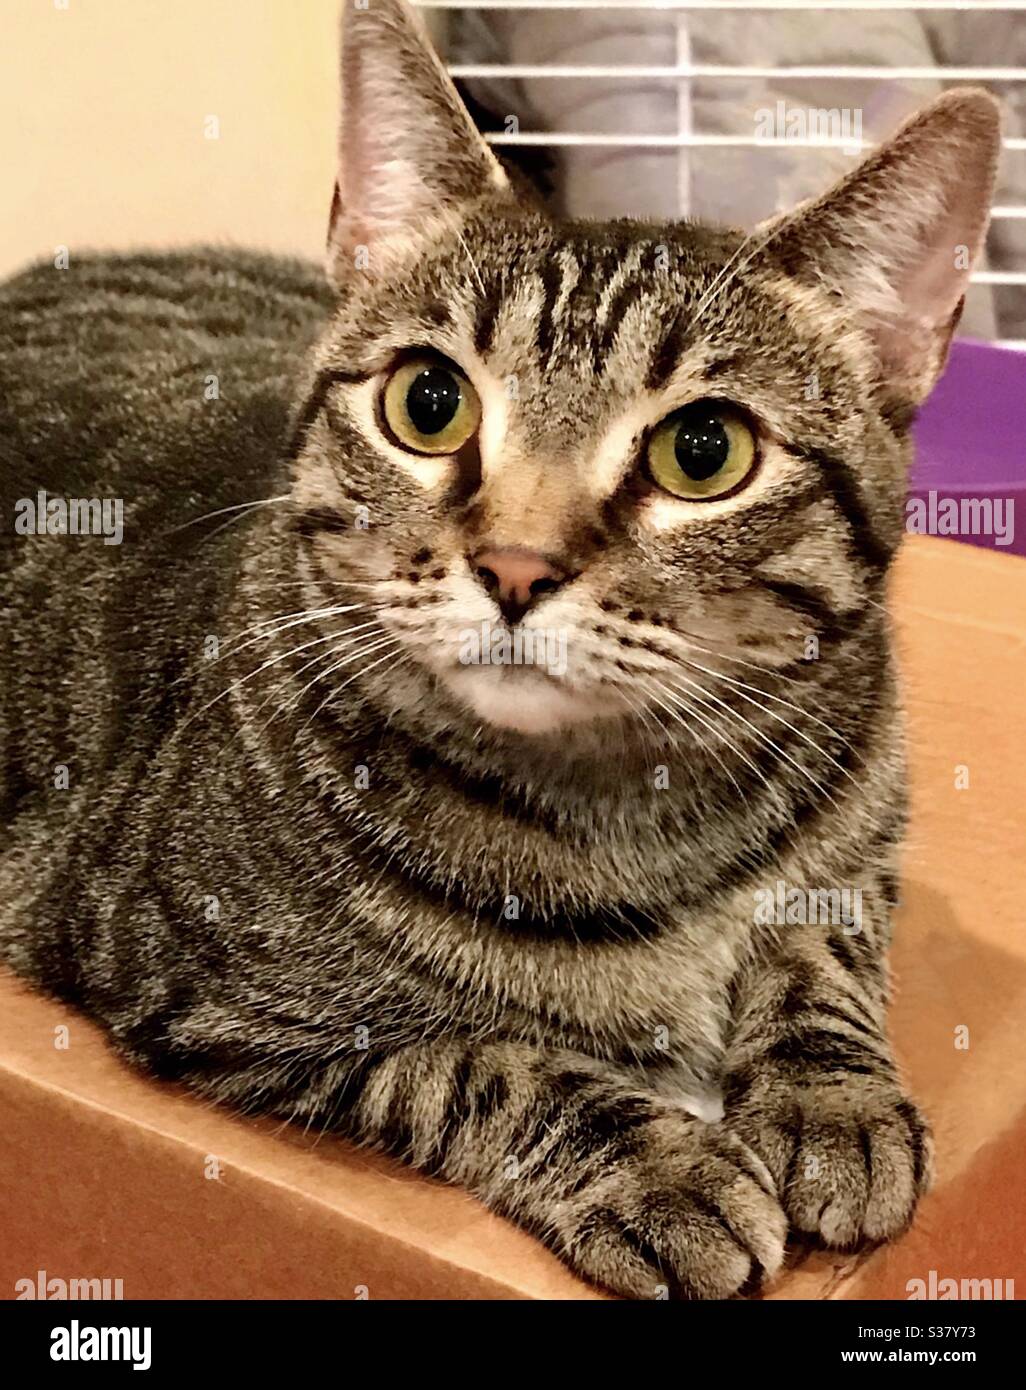 Portrait de beau chat tabby femelle brun avec de magnifiques yeux d'or de secours chaton maintenant un compagnon d'intérieur, domestique ou américain shorthair Banque D'Images